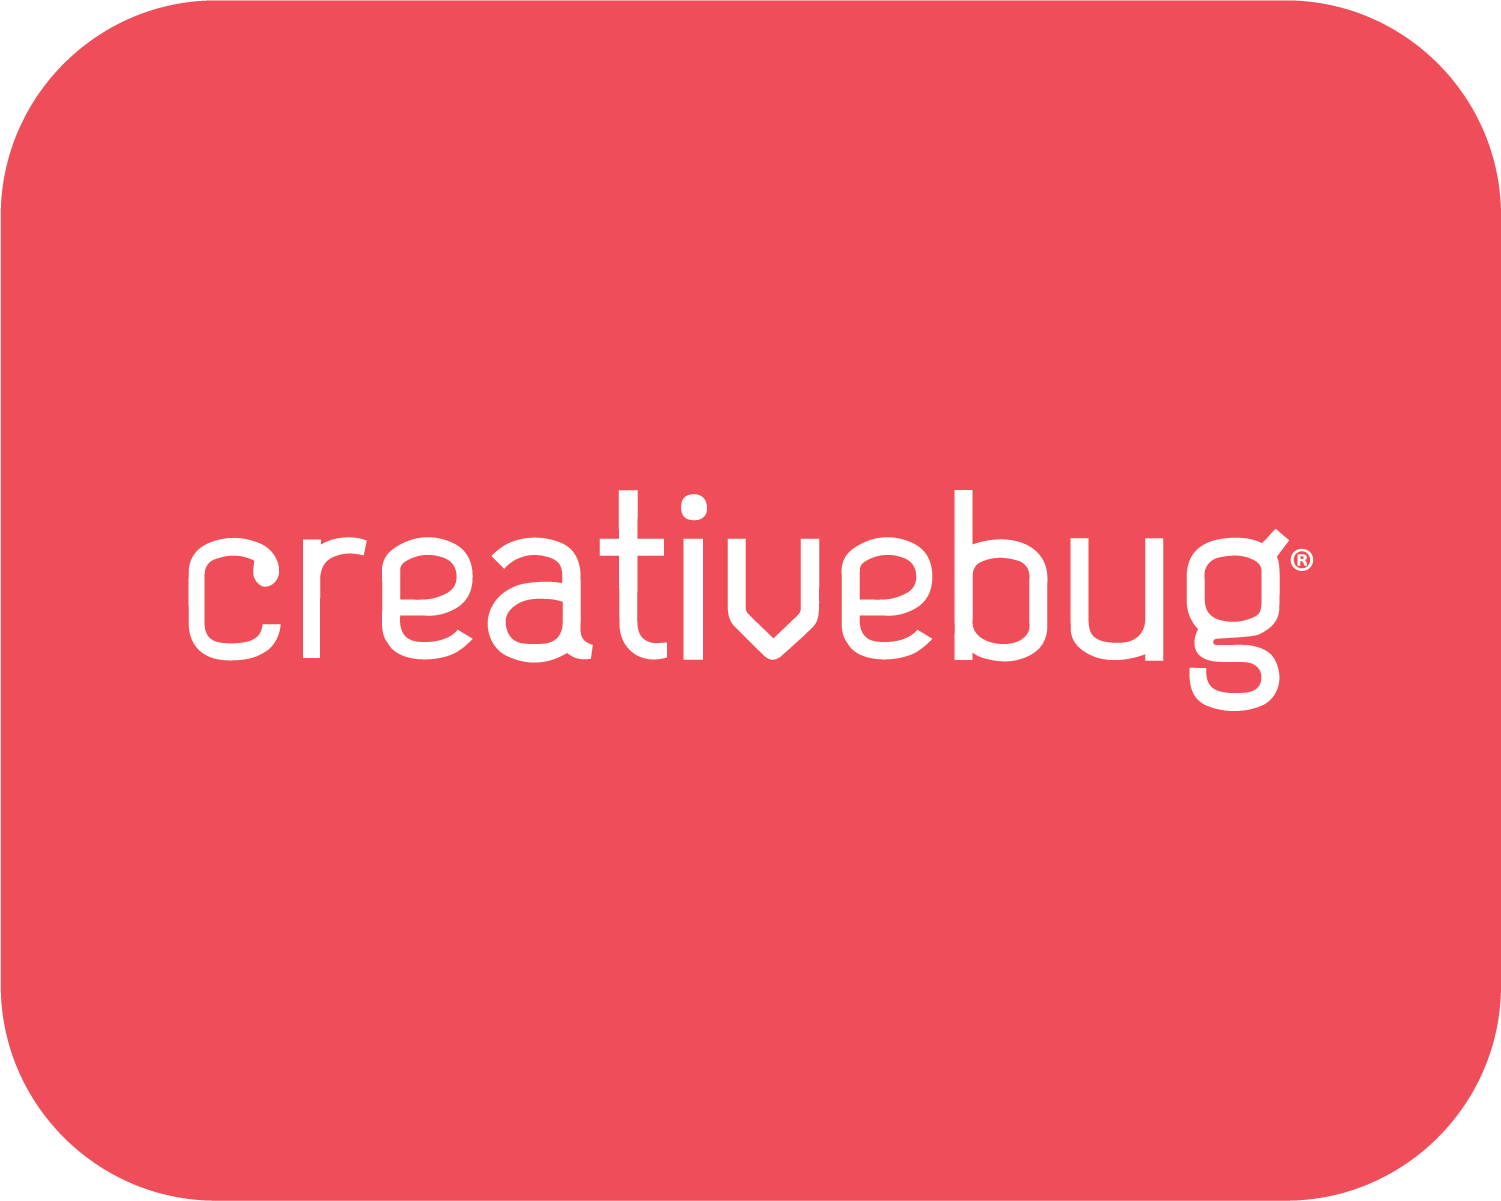 Creativebug-01.png